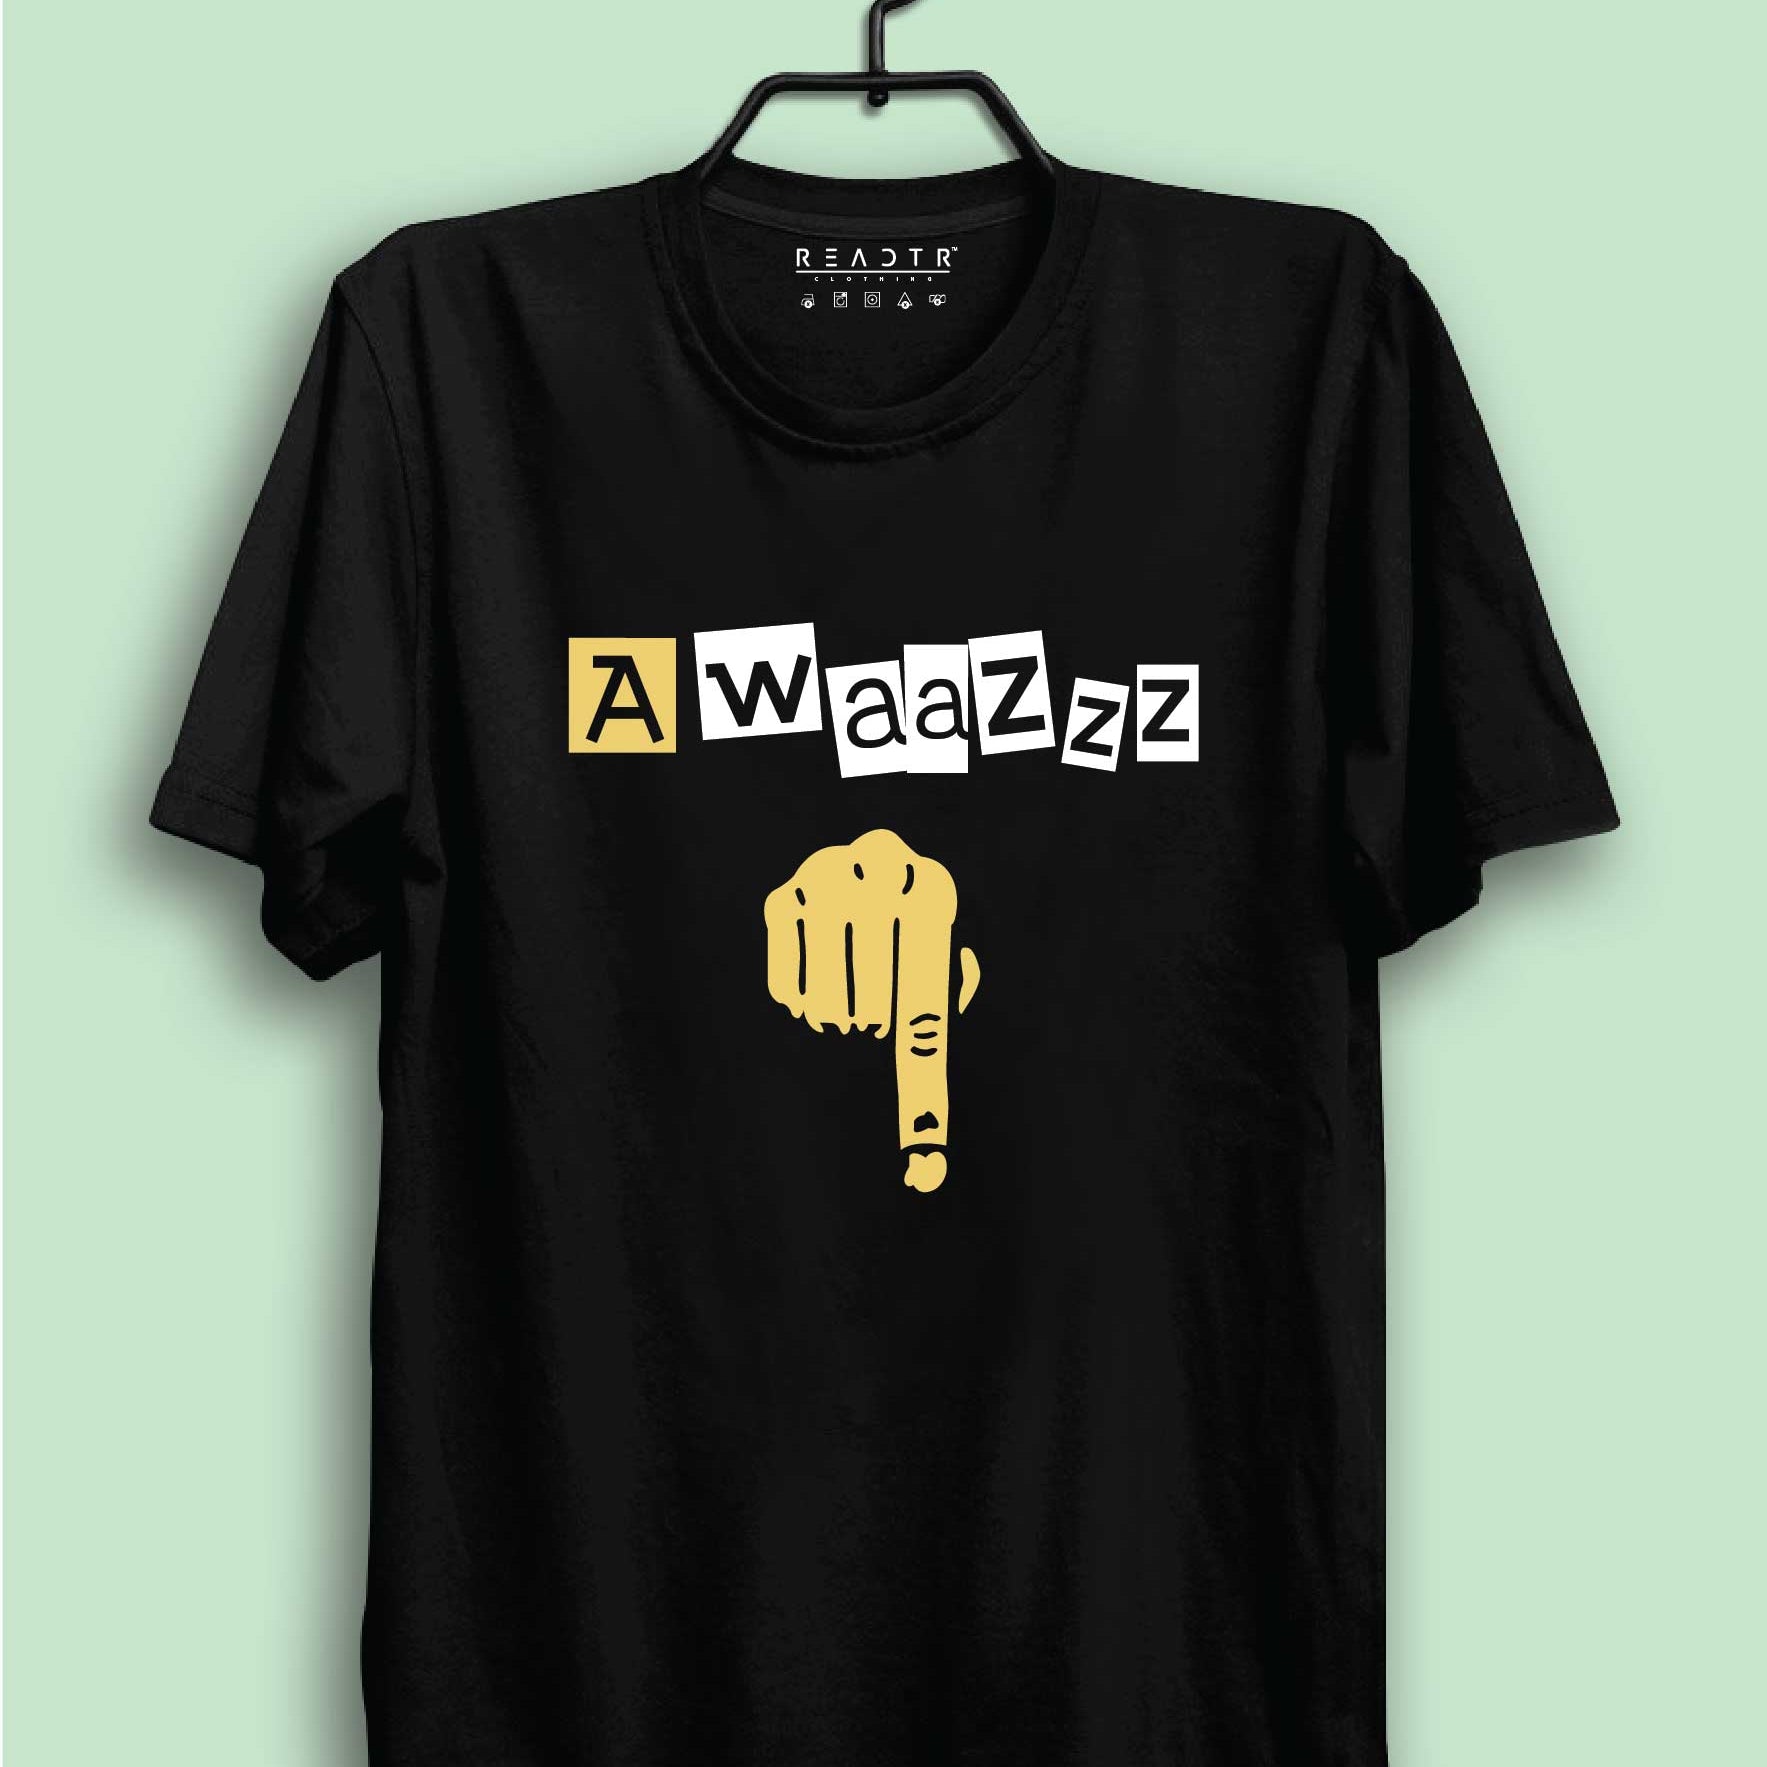 Awaaz Reactr Tshirts For Men - Eyewearlabs